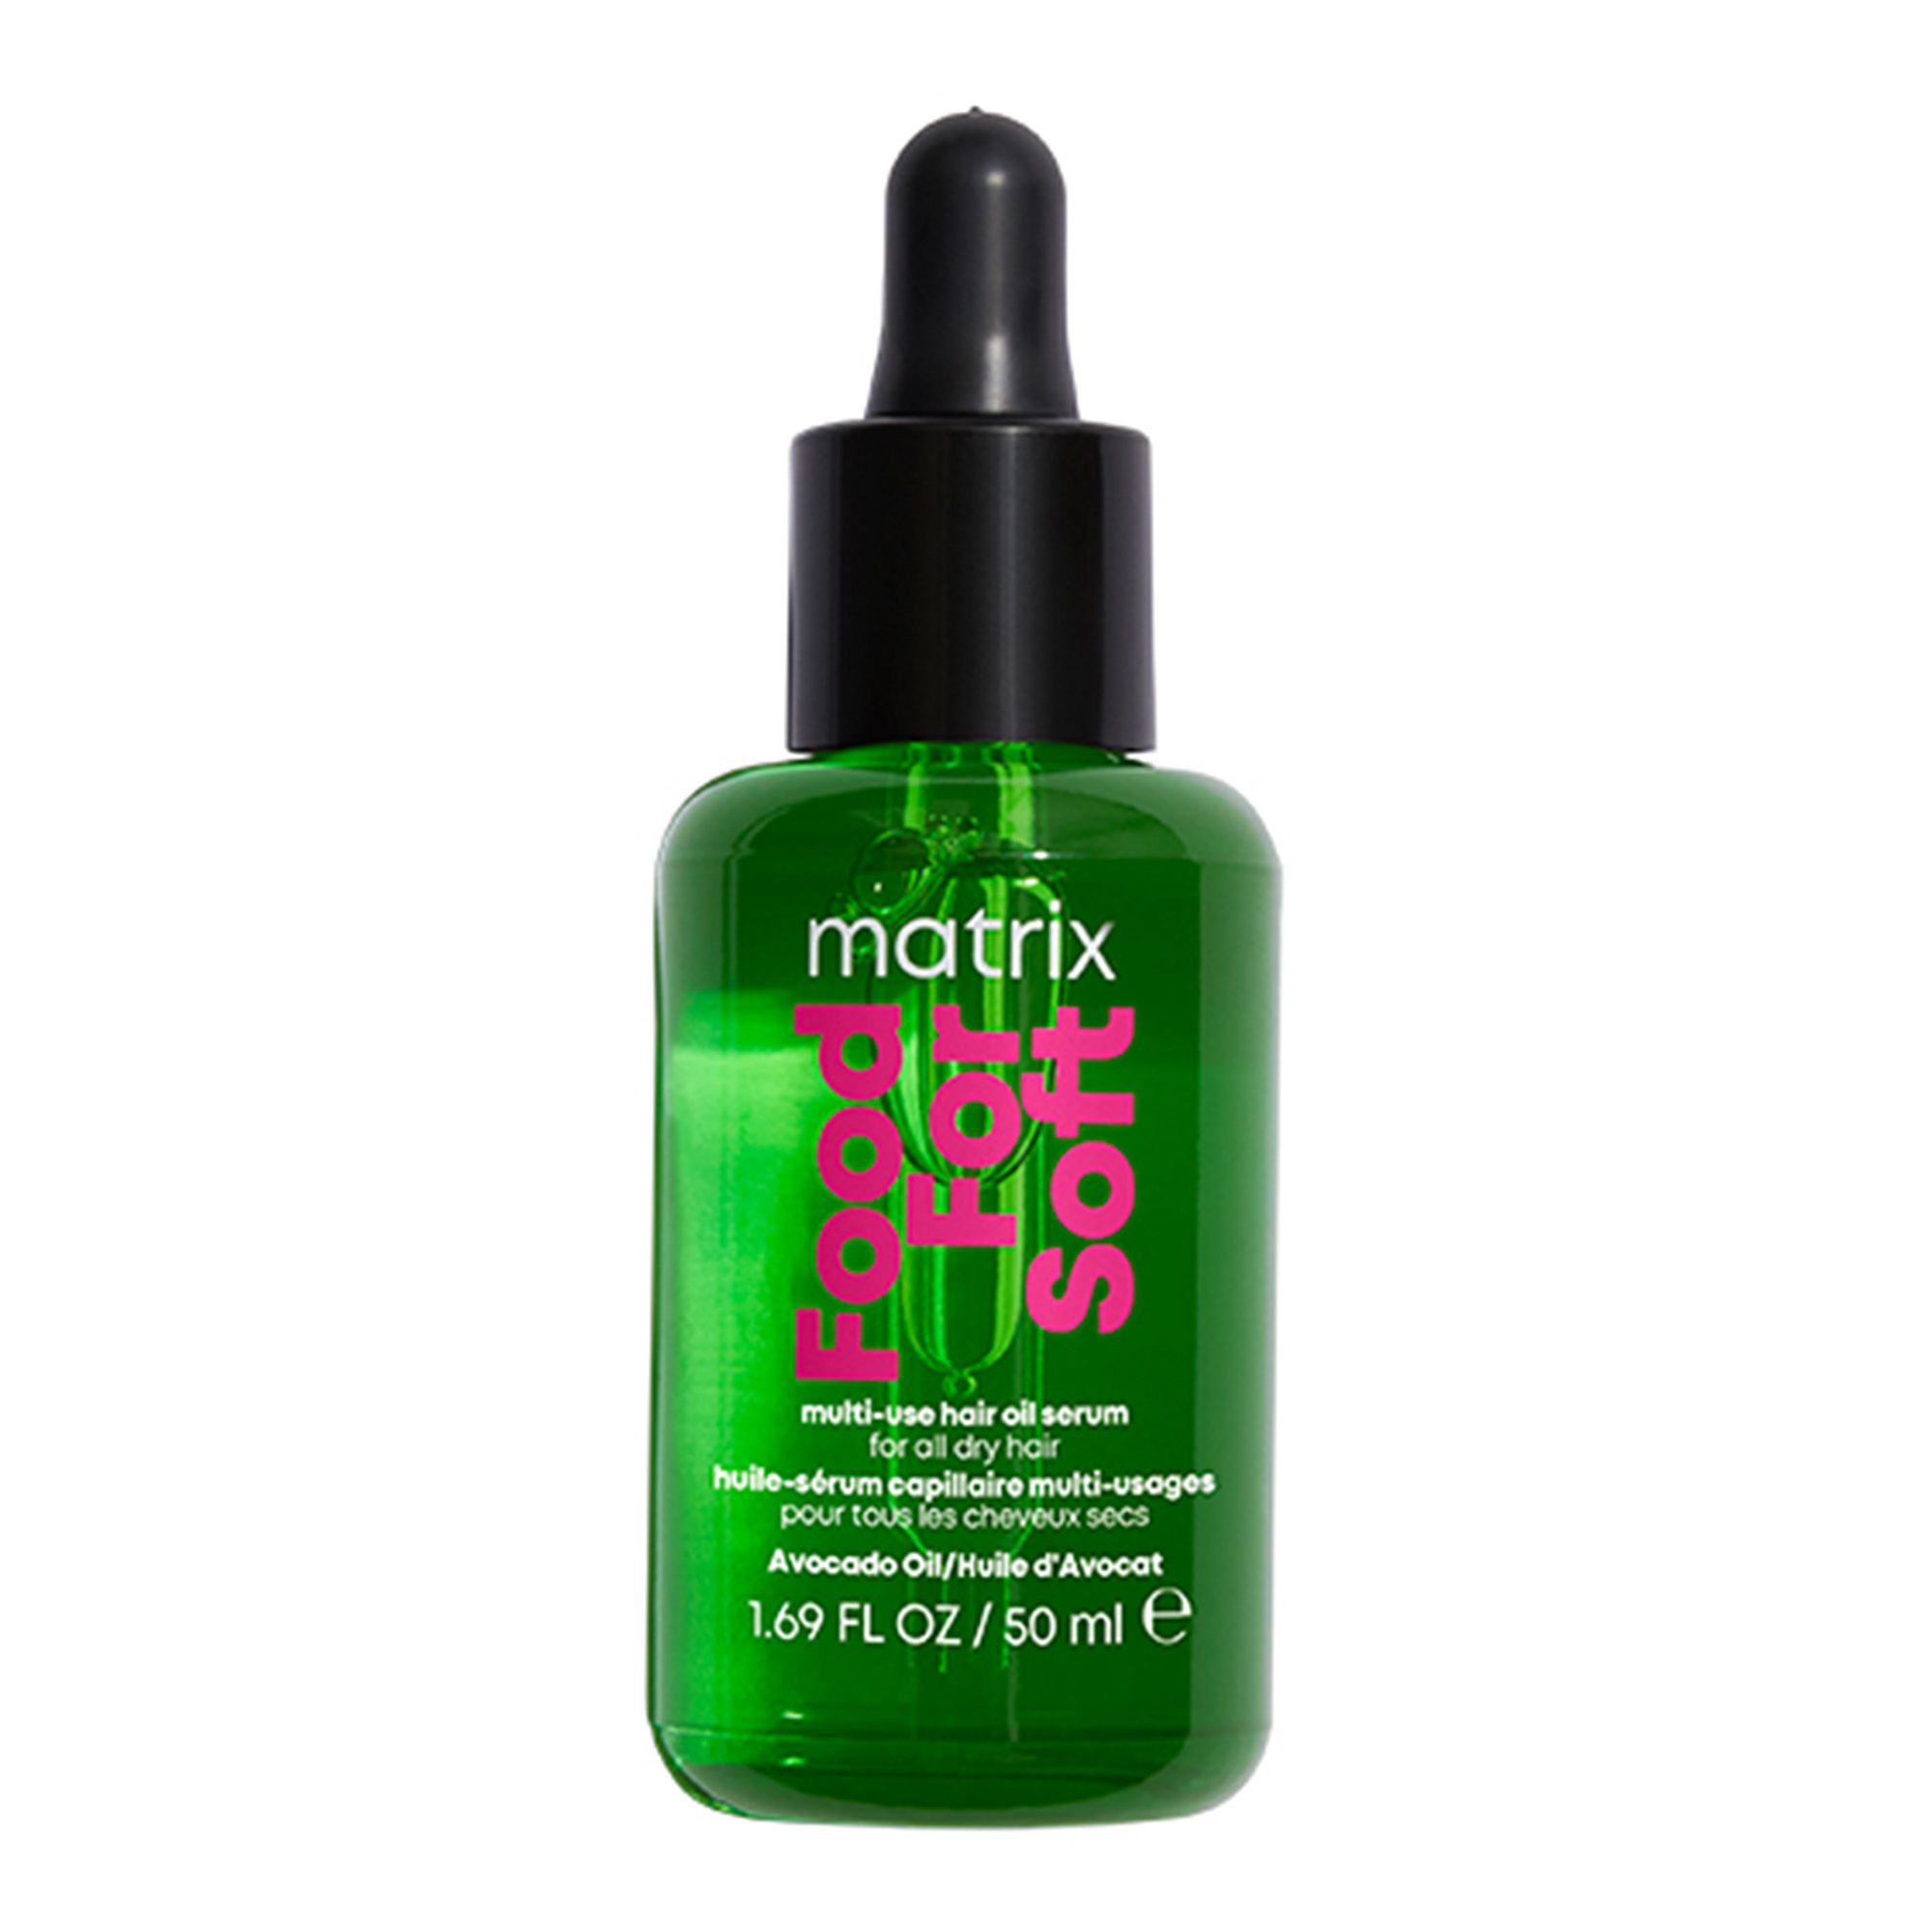 Matrix Multifunkční olejové sérum na vlasy Food Fod Soft (Multi-Use Hair Oil Serum) 50 ml